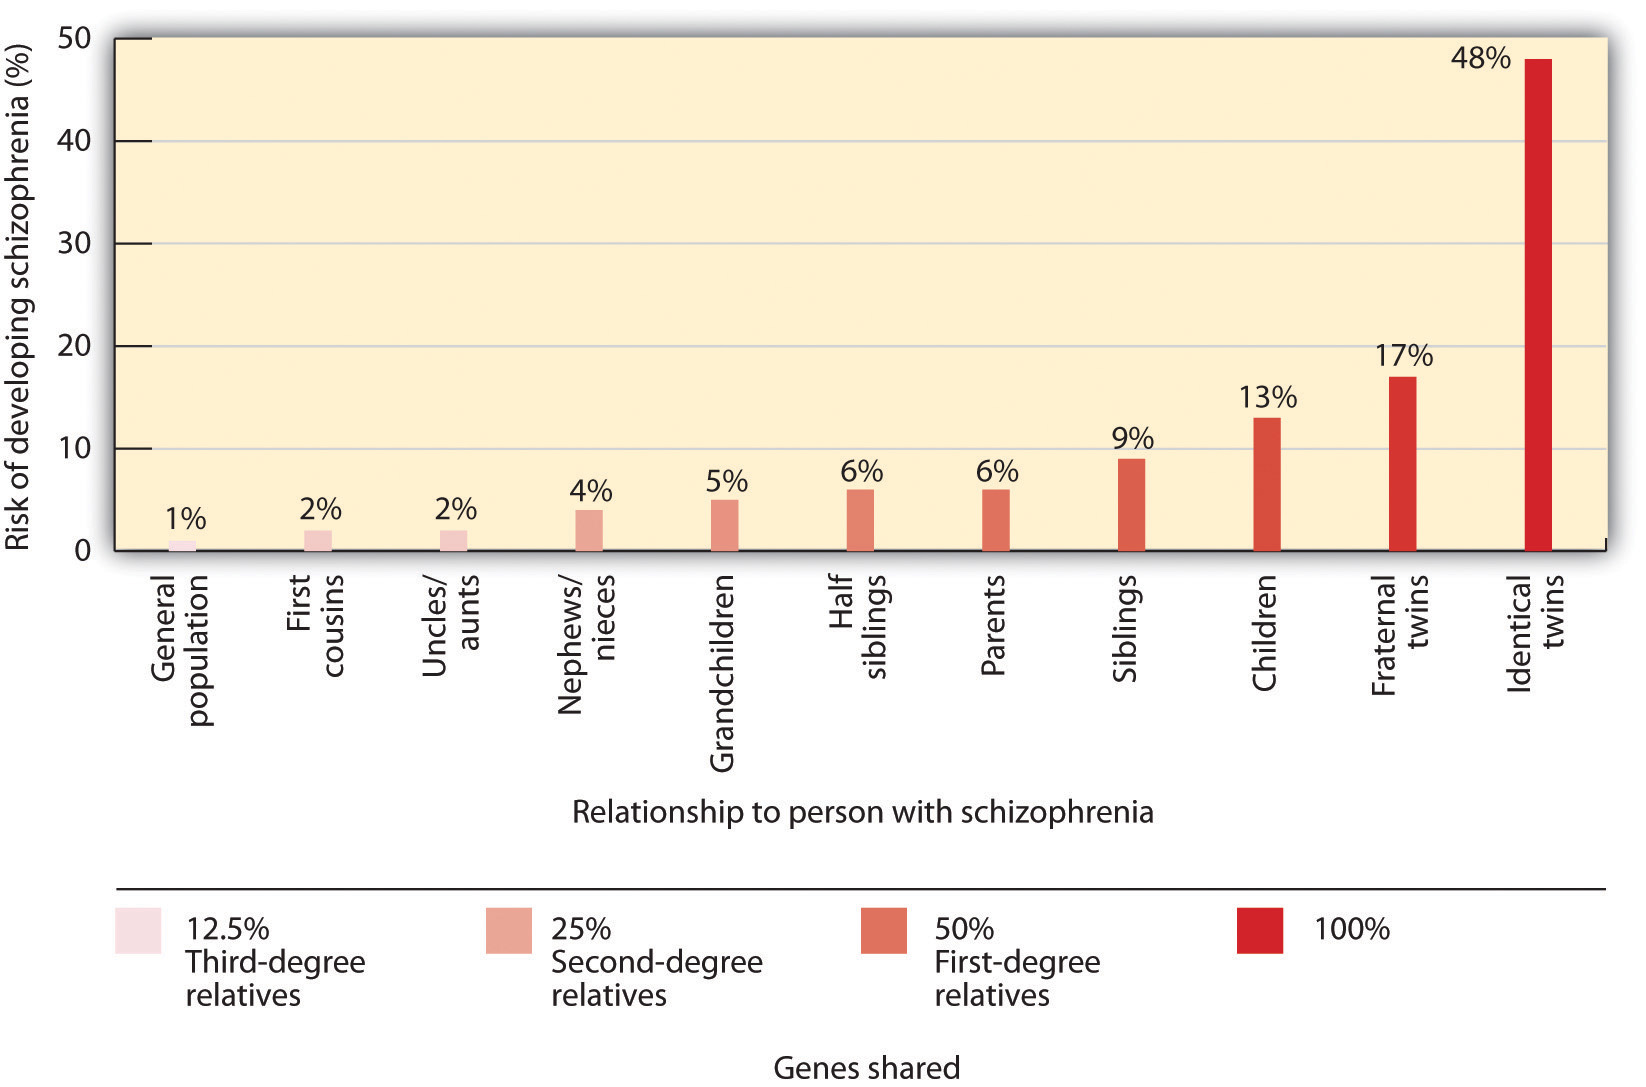 Disposición Genética para Desarrollar Esquizofrenia. Descripción larga disponible.